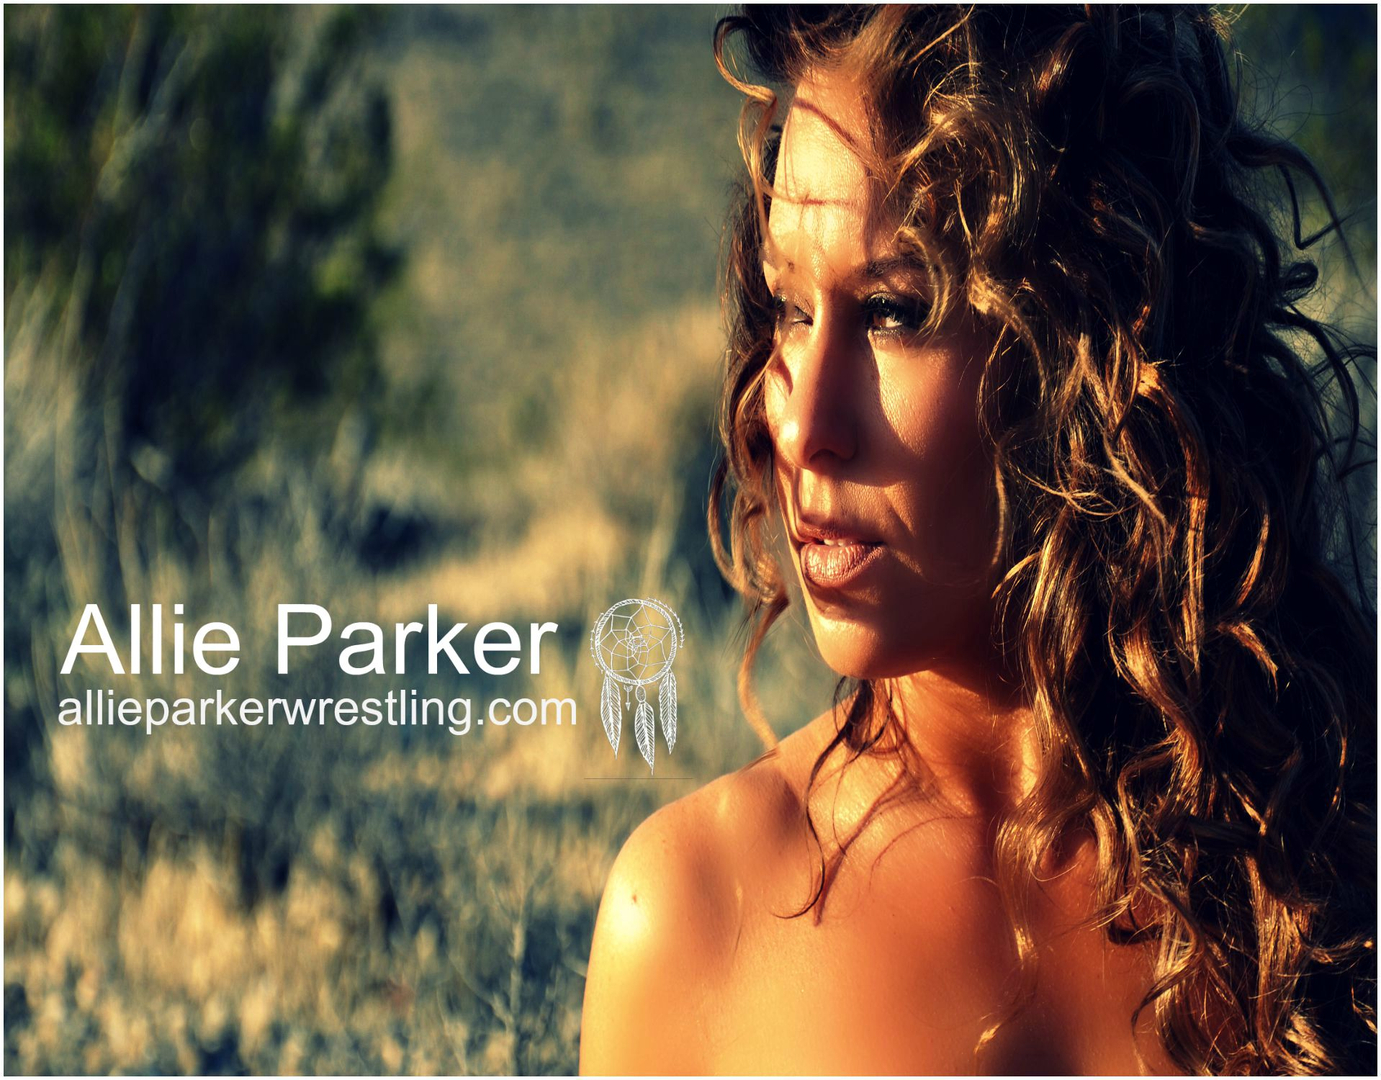 Allie Parker